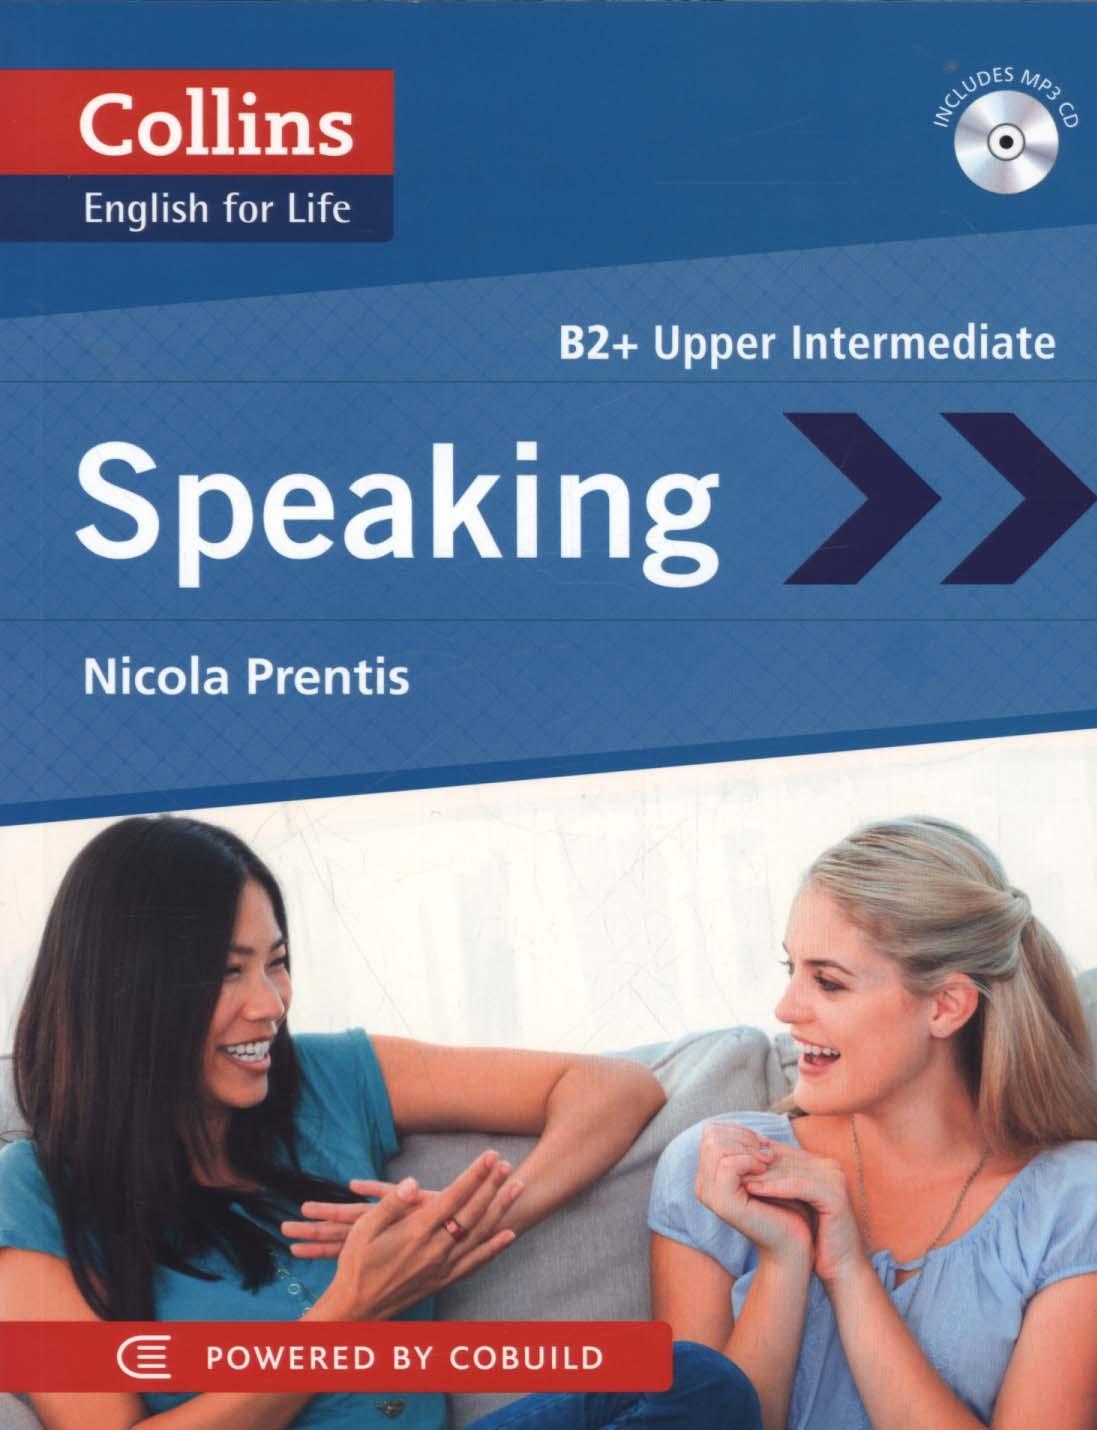 Speaking - Nicola Prentis